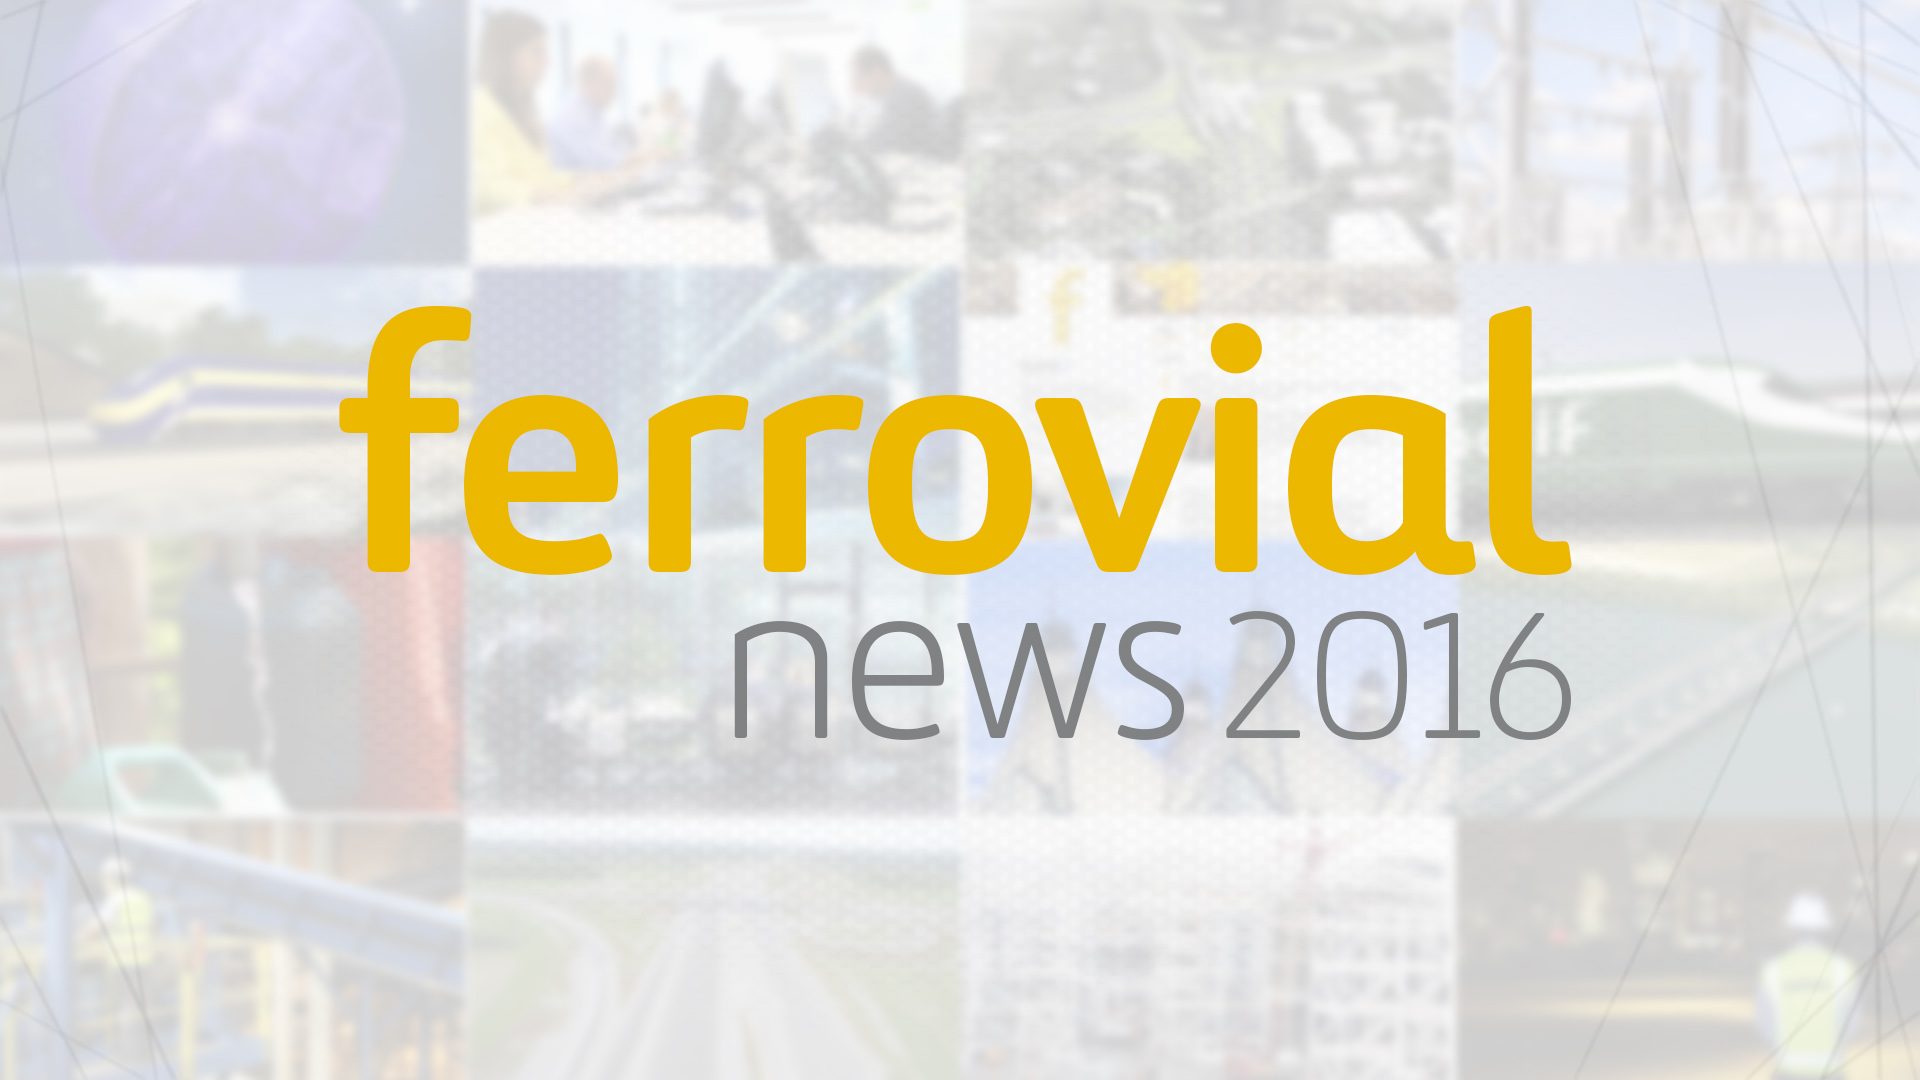 Noticias Ferrovial 2016